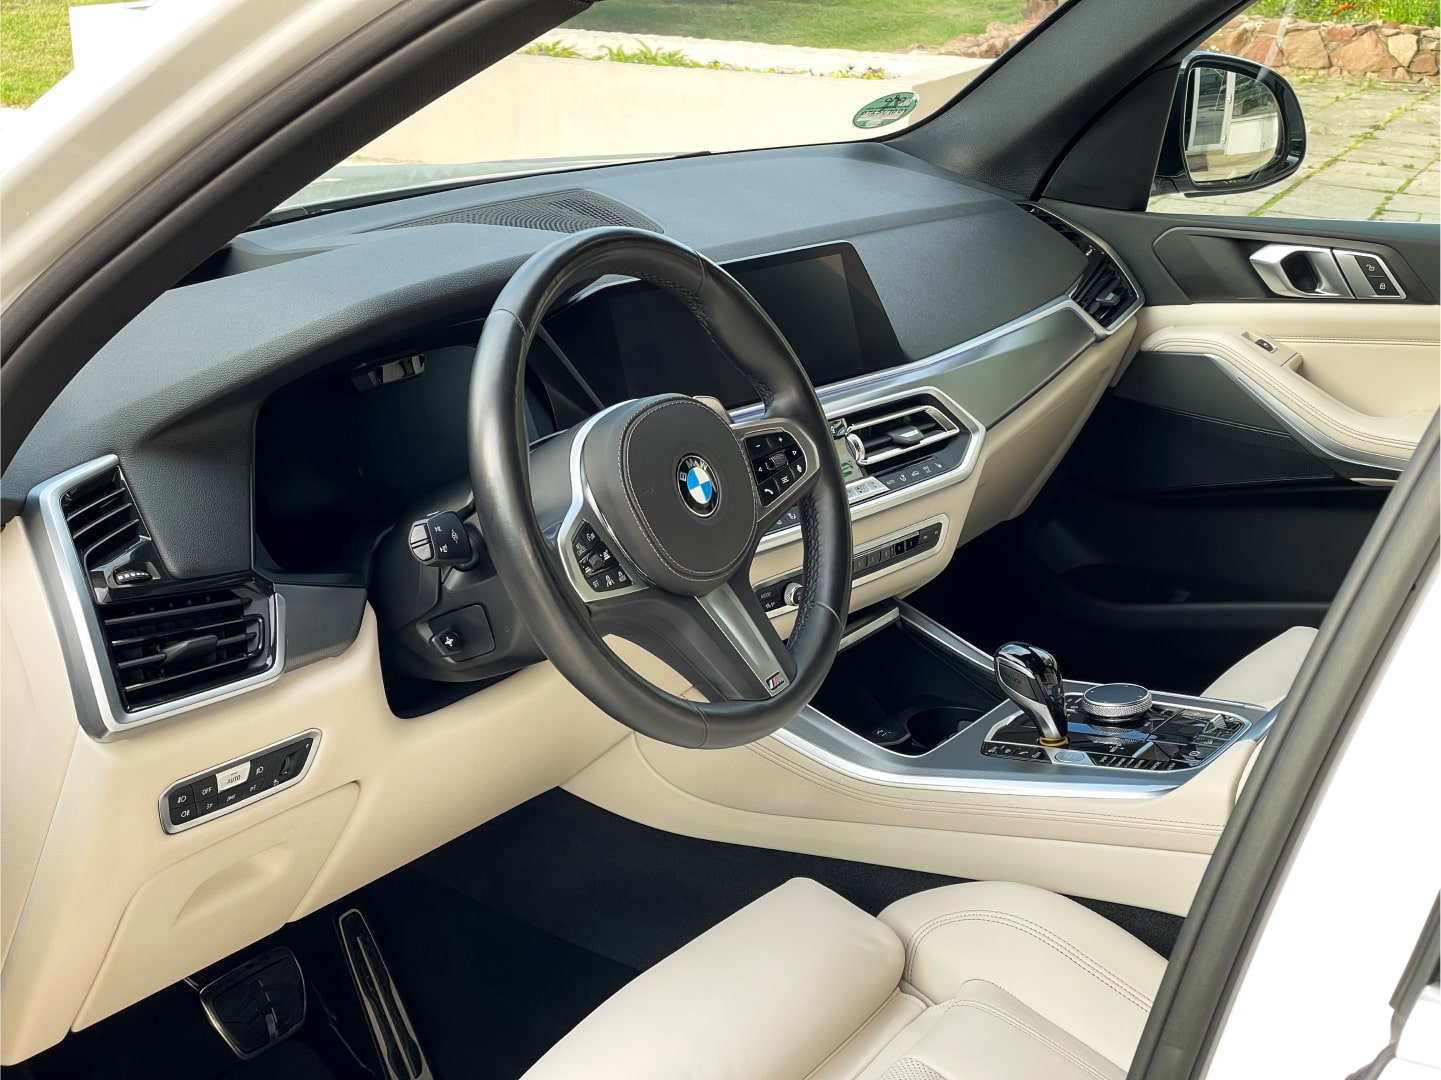 Аренда  BMW X5 G05 xDrive 30d AT M Sport  6 класса 2020 года в городе Минск от 254 $/сутки,  двигатель: ДТ , объем 3.0 литров, КАСКО (Мультидрайв), без водителя, вид 7 - West Group